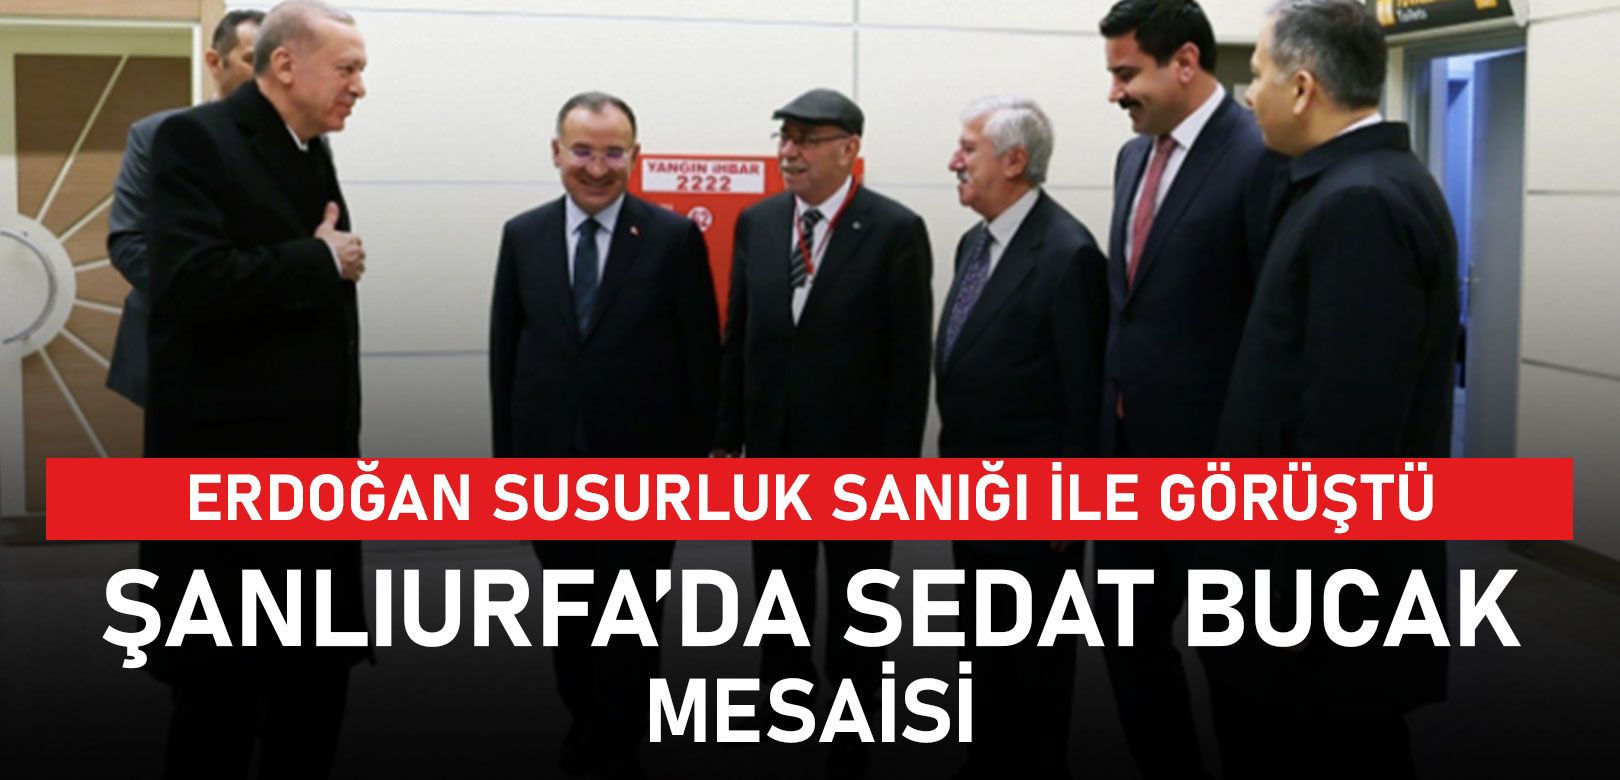 Erdoğan, Susurluk sanığı Sedat Bucak’la görüştü: Görüşme yarım saat sürdü